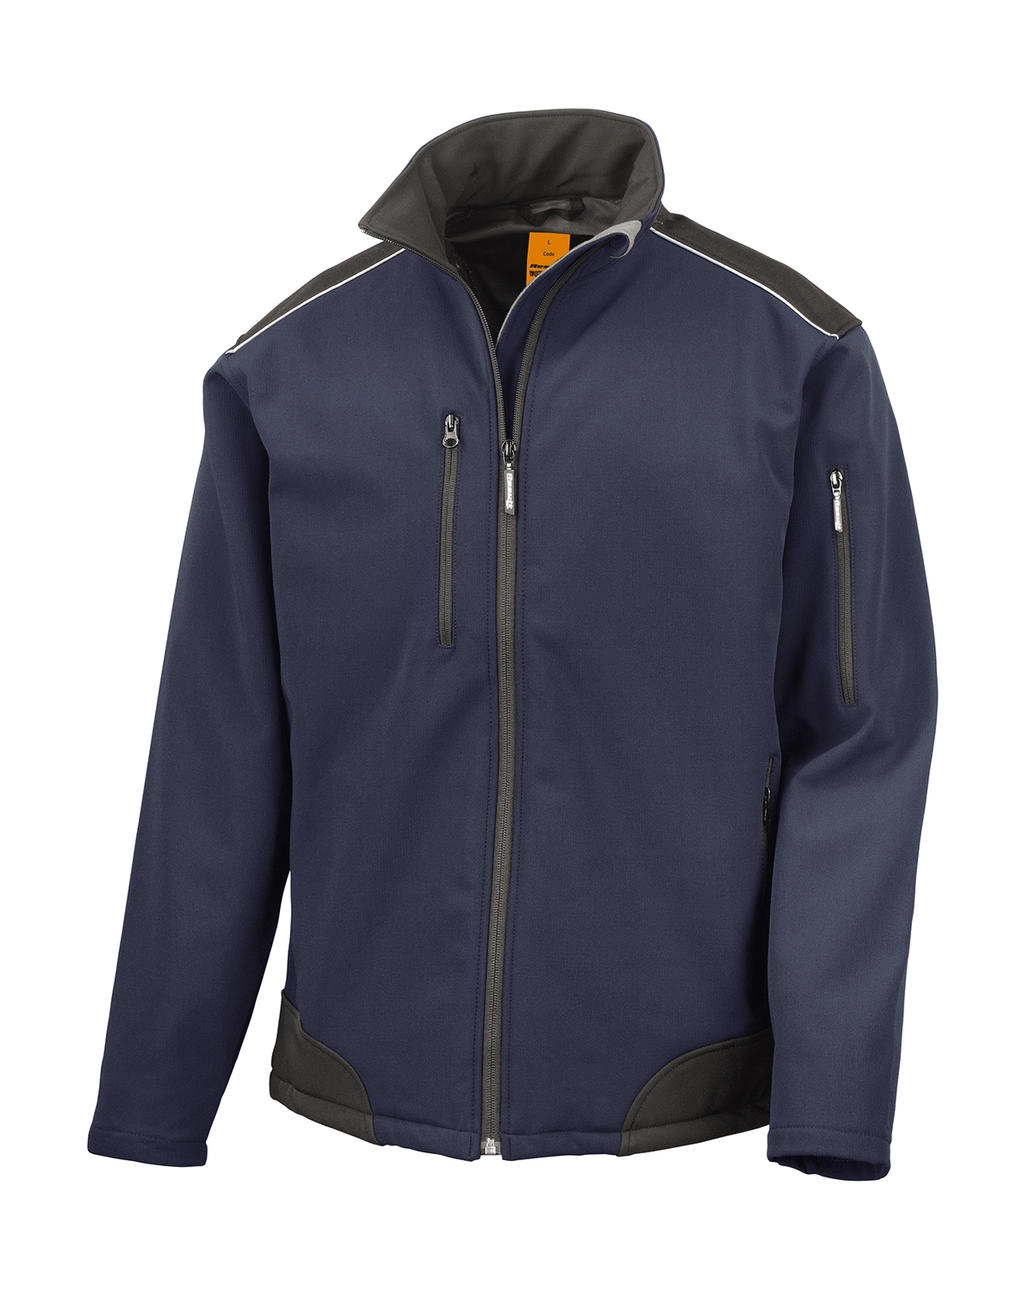 Ripstop Softshell Work Jacket zum Besticken und Bedrucken in der Farbe Navy/Black mit Ihren Logo, Schriftzug oder Motiv.